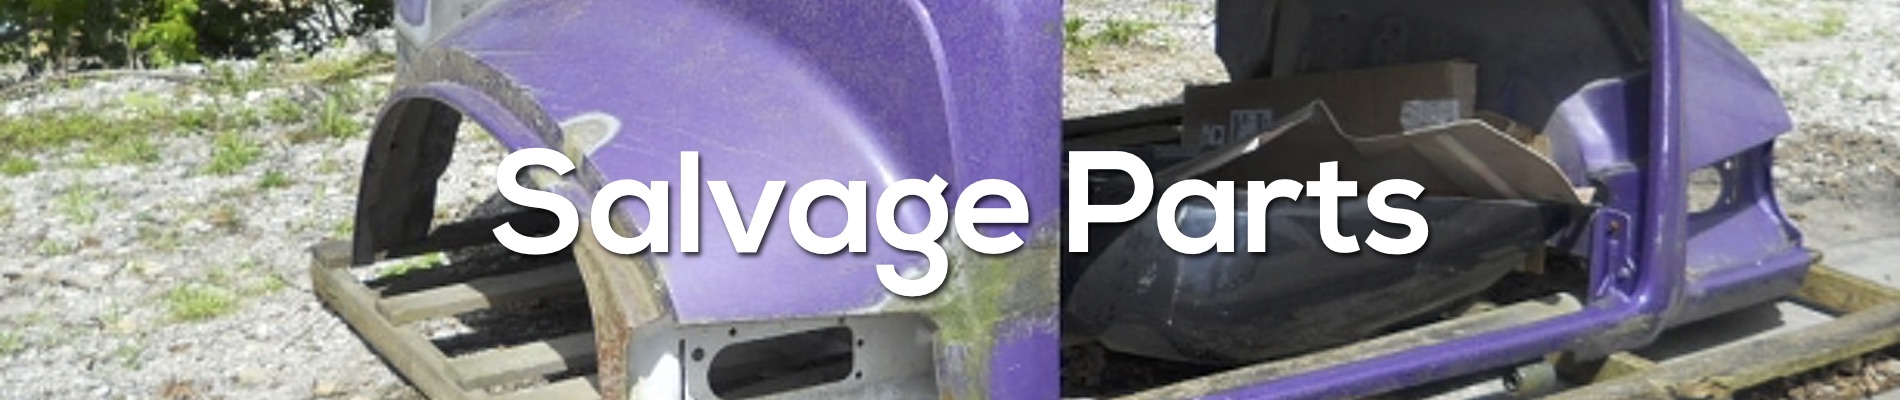 salvage parts header